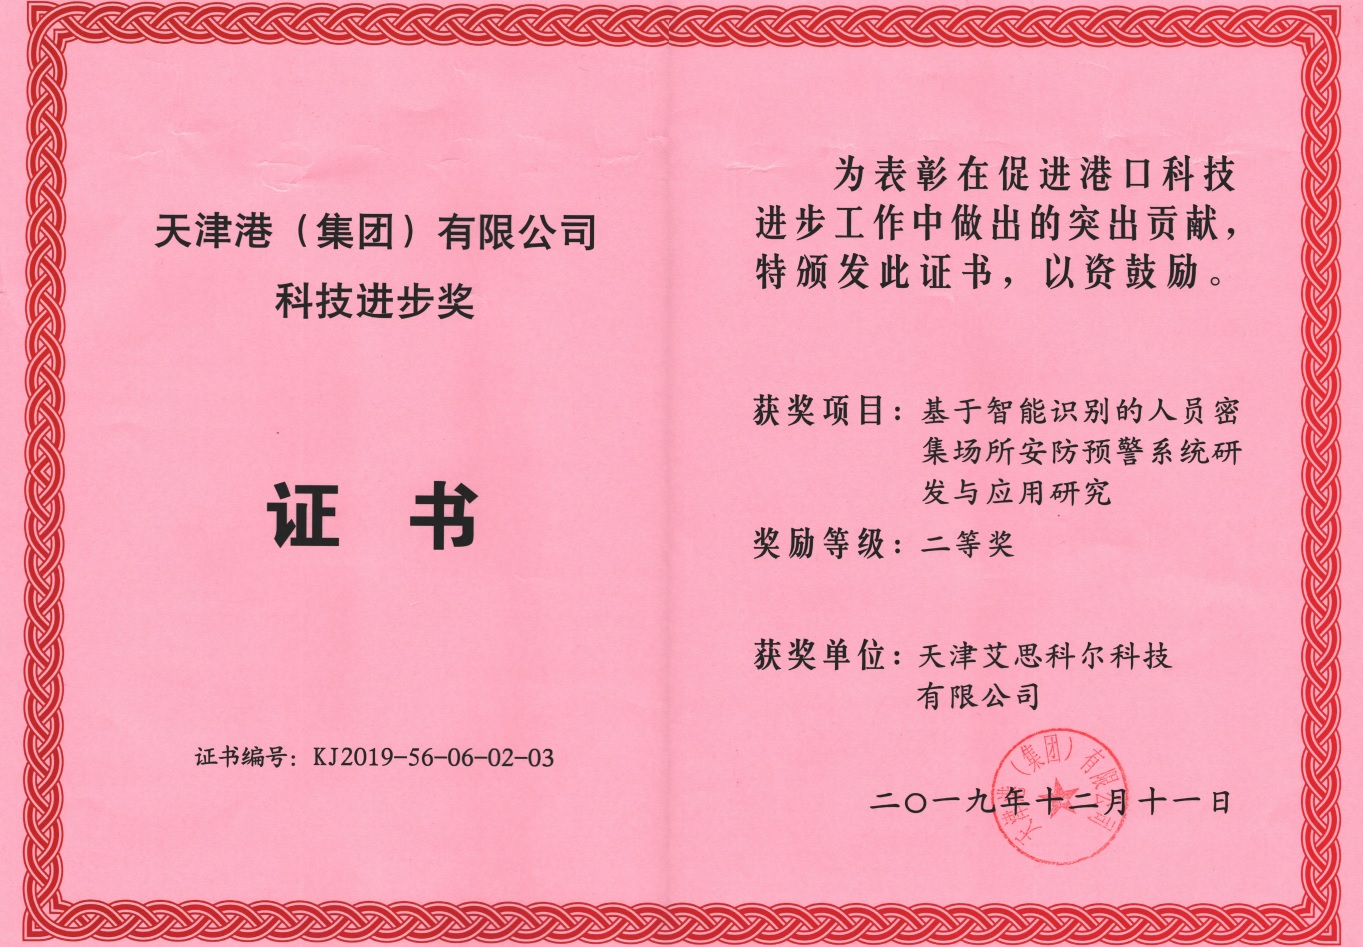 【喜报】我公司参与的项目喜获天津港科技进步二等奖